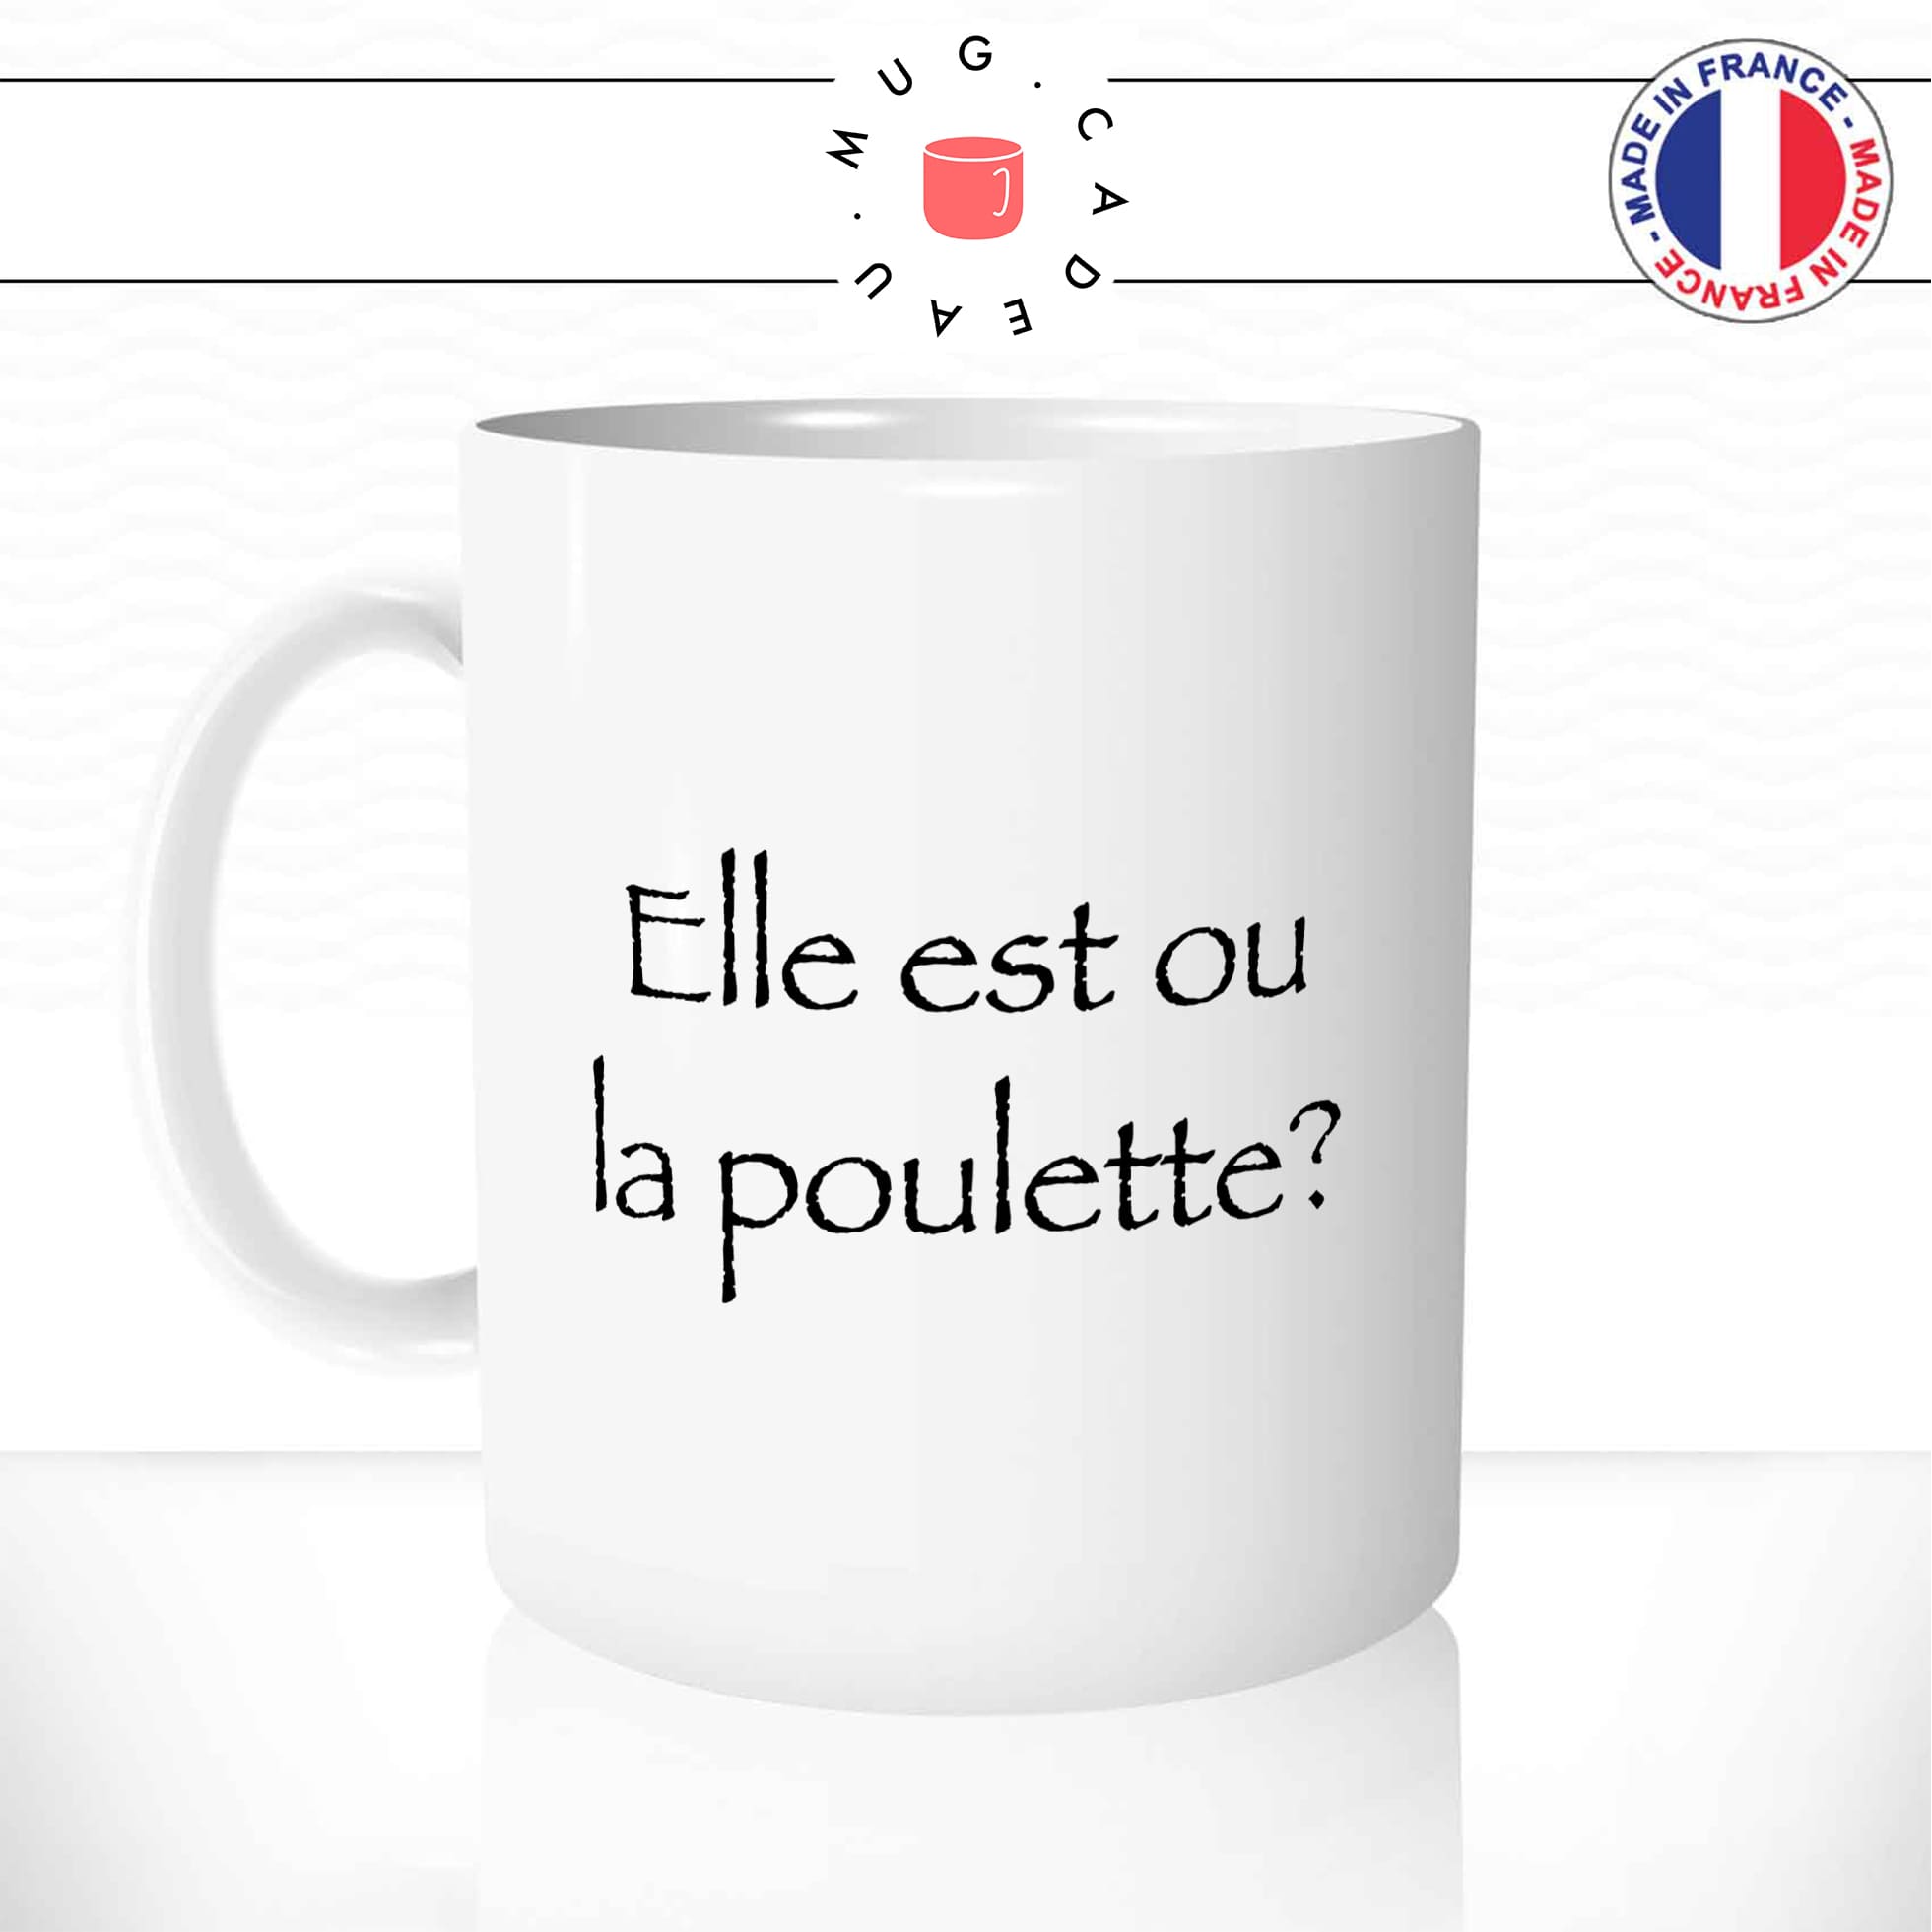 mug-tasse-kaamelott-elle-est-ou-la-poulette-citation-arthur-série-tv-francaise-drole-humour-fun-idée-cadeau-original-café-thé-personnalisée